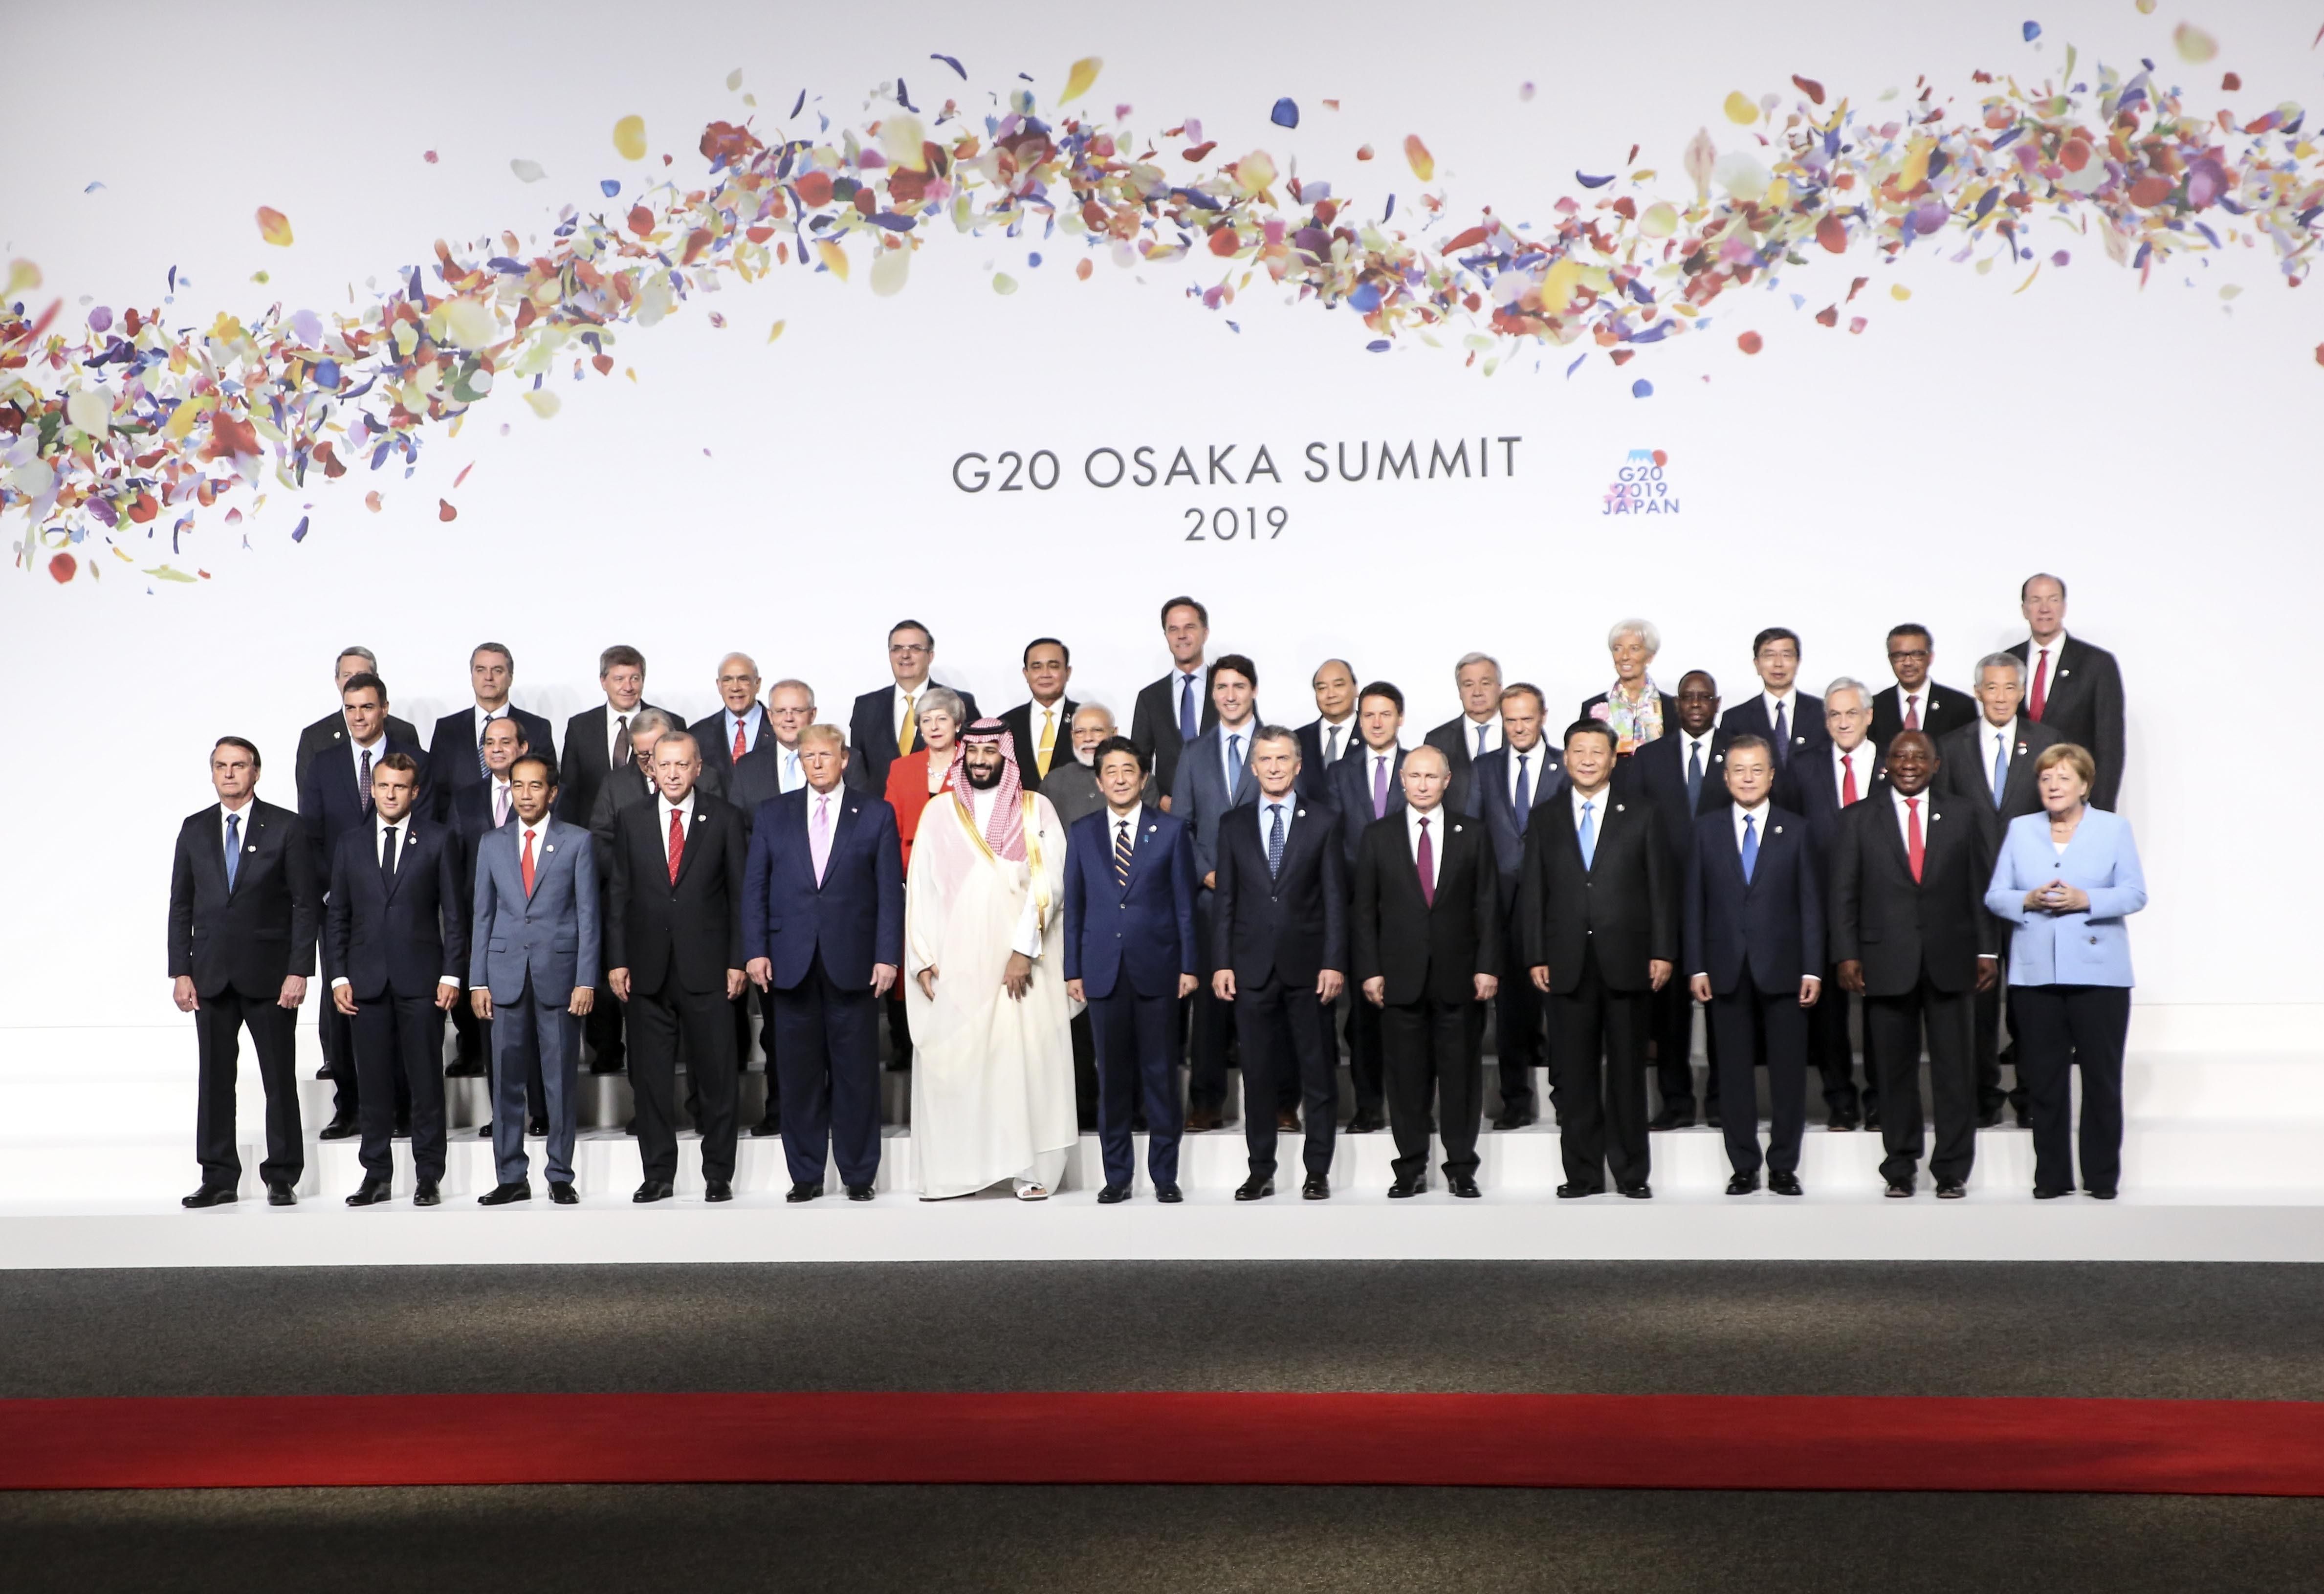 Саммит G20 2019 в Осаке - фото, видео 28 -29 июня 2019